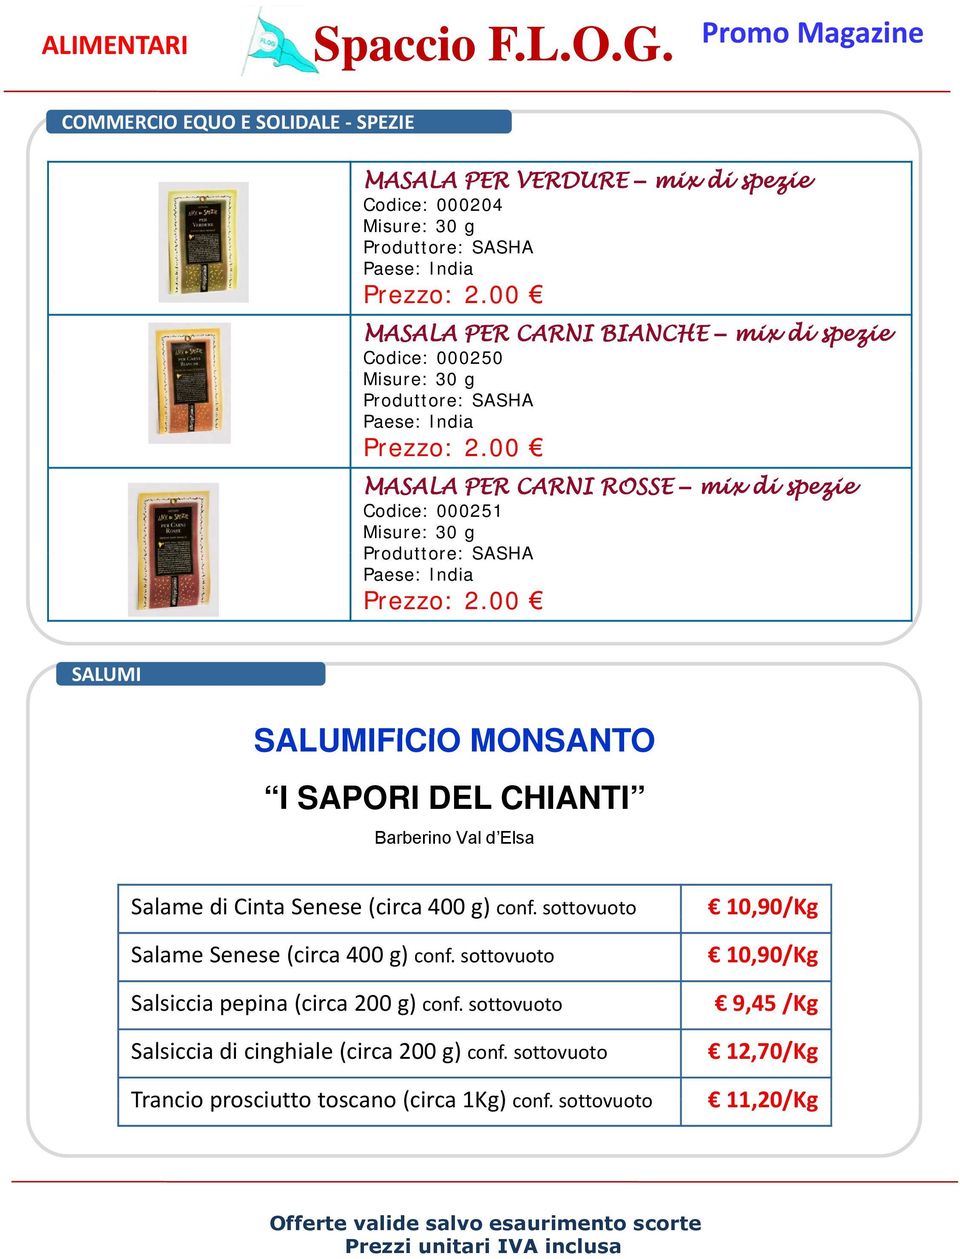 CHIANTI Barberino Val d Elsa Salame di Cinta Senese (circa 400 g) conf. sottovuoto 10,90/Kg Salame Senese (circa 400 g) conf.